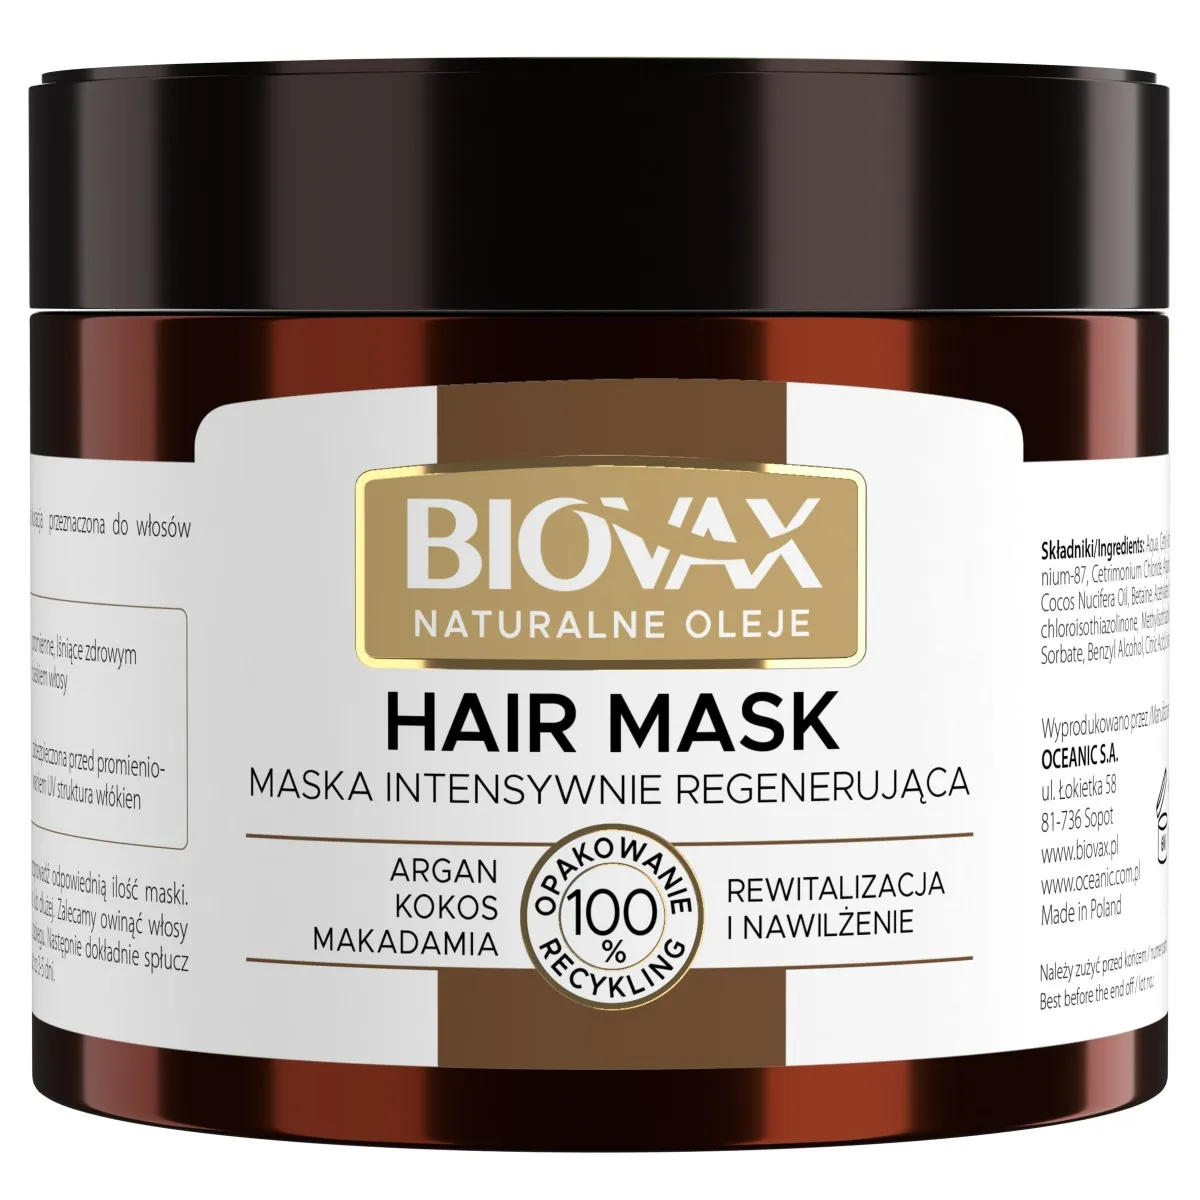 Biovax Argan Makadamia Kokos, intensywnie regenerująca maseczka do włosów, 250 ml